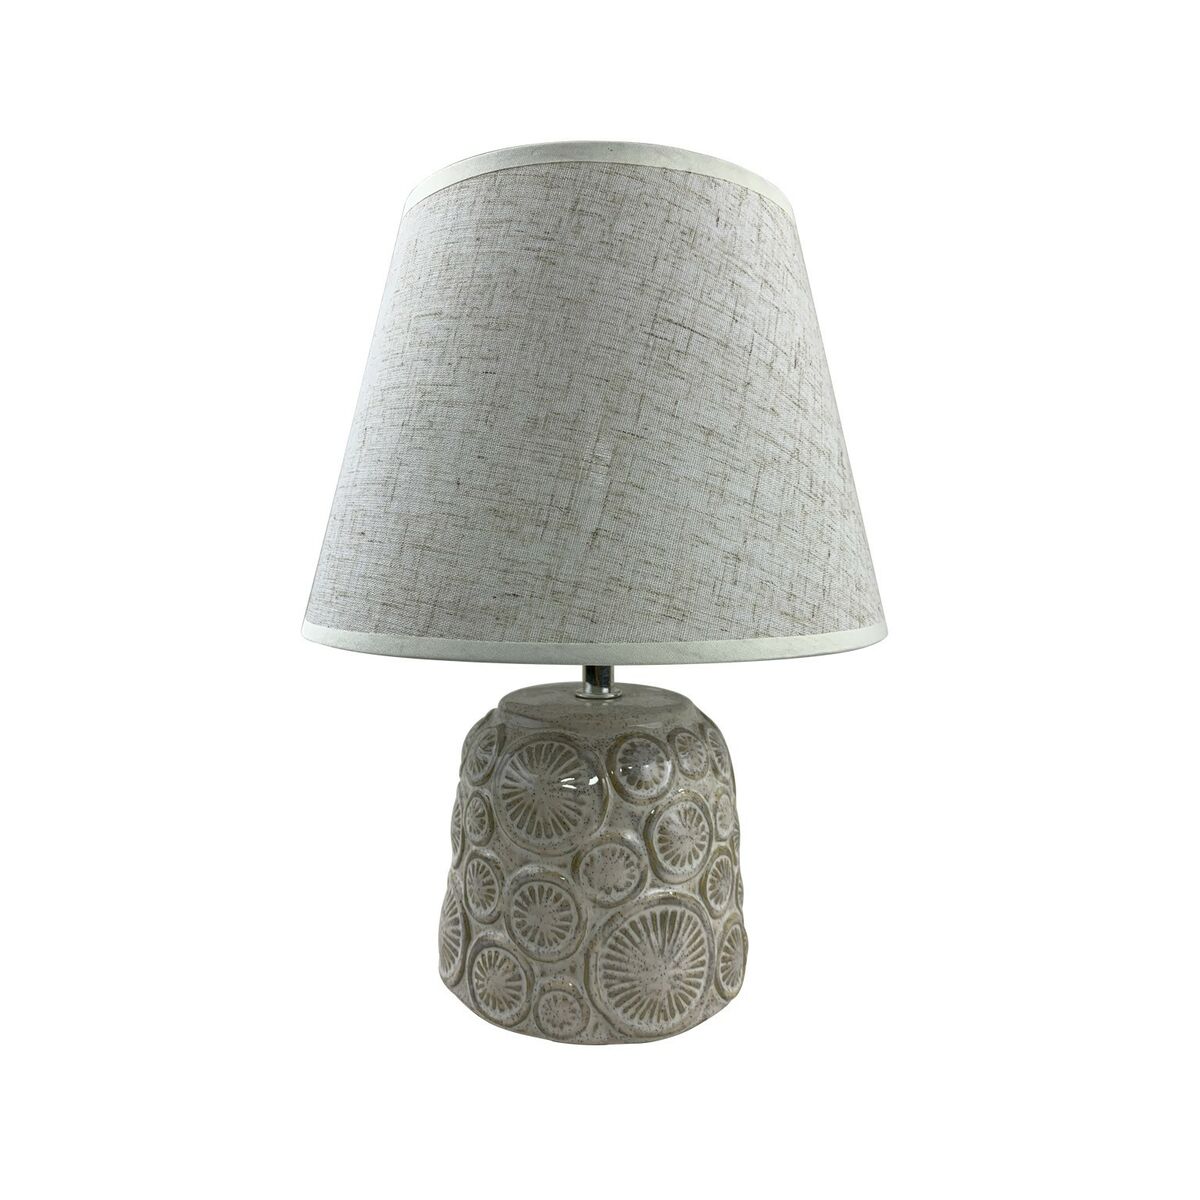 Настолна лампа Син Керамика 40 W 220-240 V 16 x 16 x 27 cm